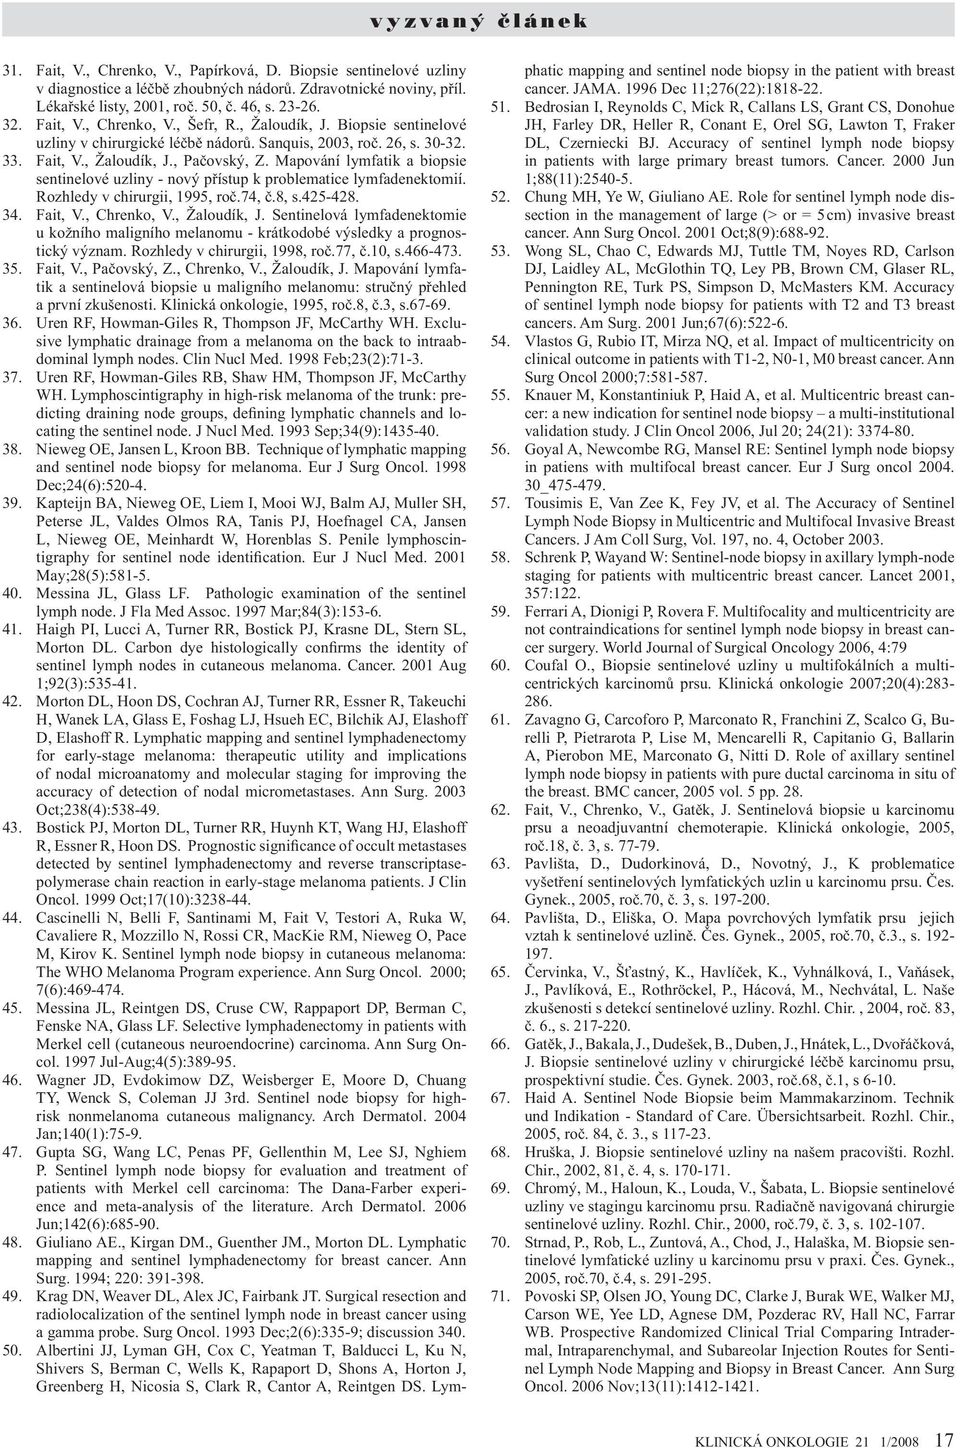 26, s. 30-32. Fait, V., Žaloudík, J., Pačovský, Z. Mapování lymfatik a biopsie sentinelové uzliny - nový přístup k problematice lymfadenektomií. Rozhledy v chirurgii, 1995, roč.74, č.8, s.425-428.